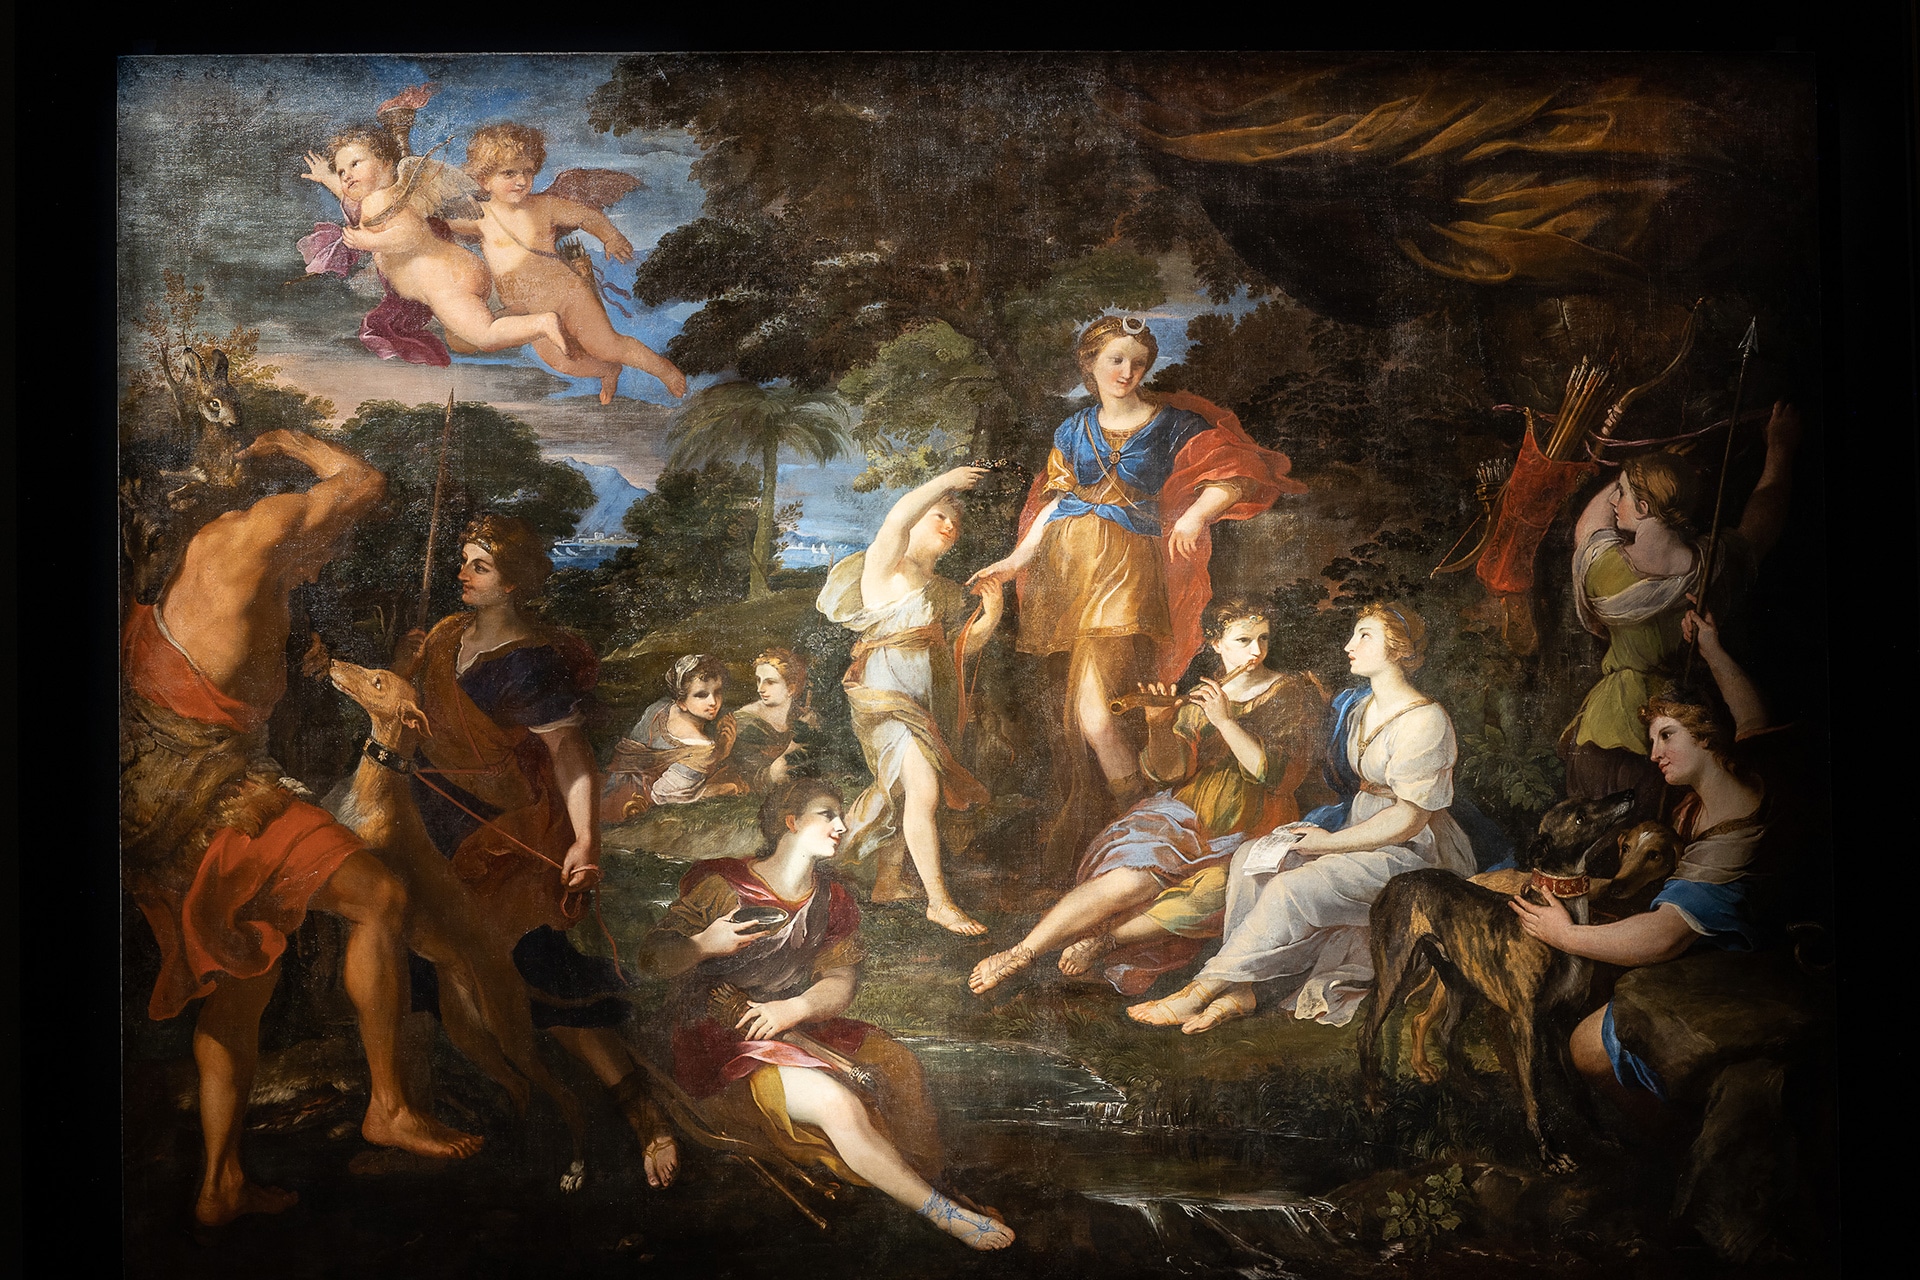 Andrea Camassei (Bevagna 1602 - Roma 1649), Il riposo di Diana, 1638. Olio su tela, 293 x 403 cm. Roma, Gallerie Nazionali di Arte Antica - Palazzo Barberini